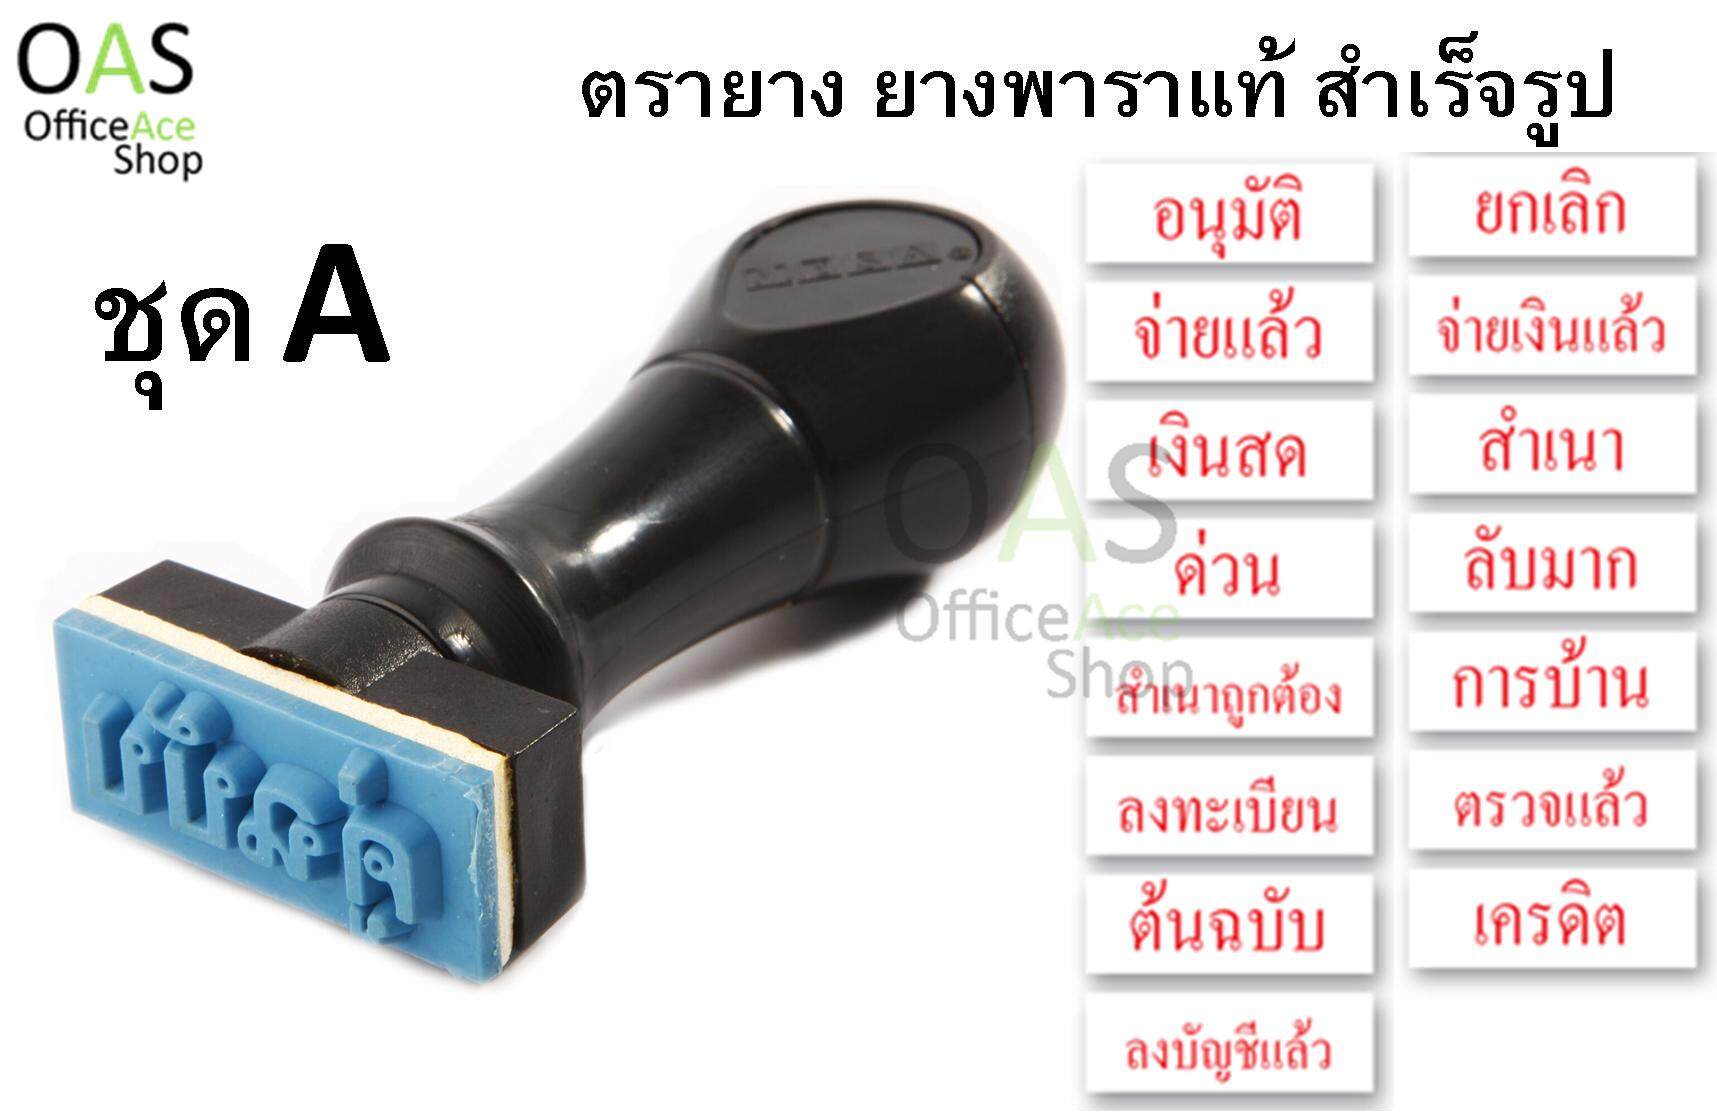 MESA Rubber Stamp ตรายางสำเร็จรูป ยางพาราแท้(ชุด A)